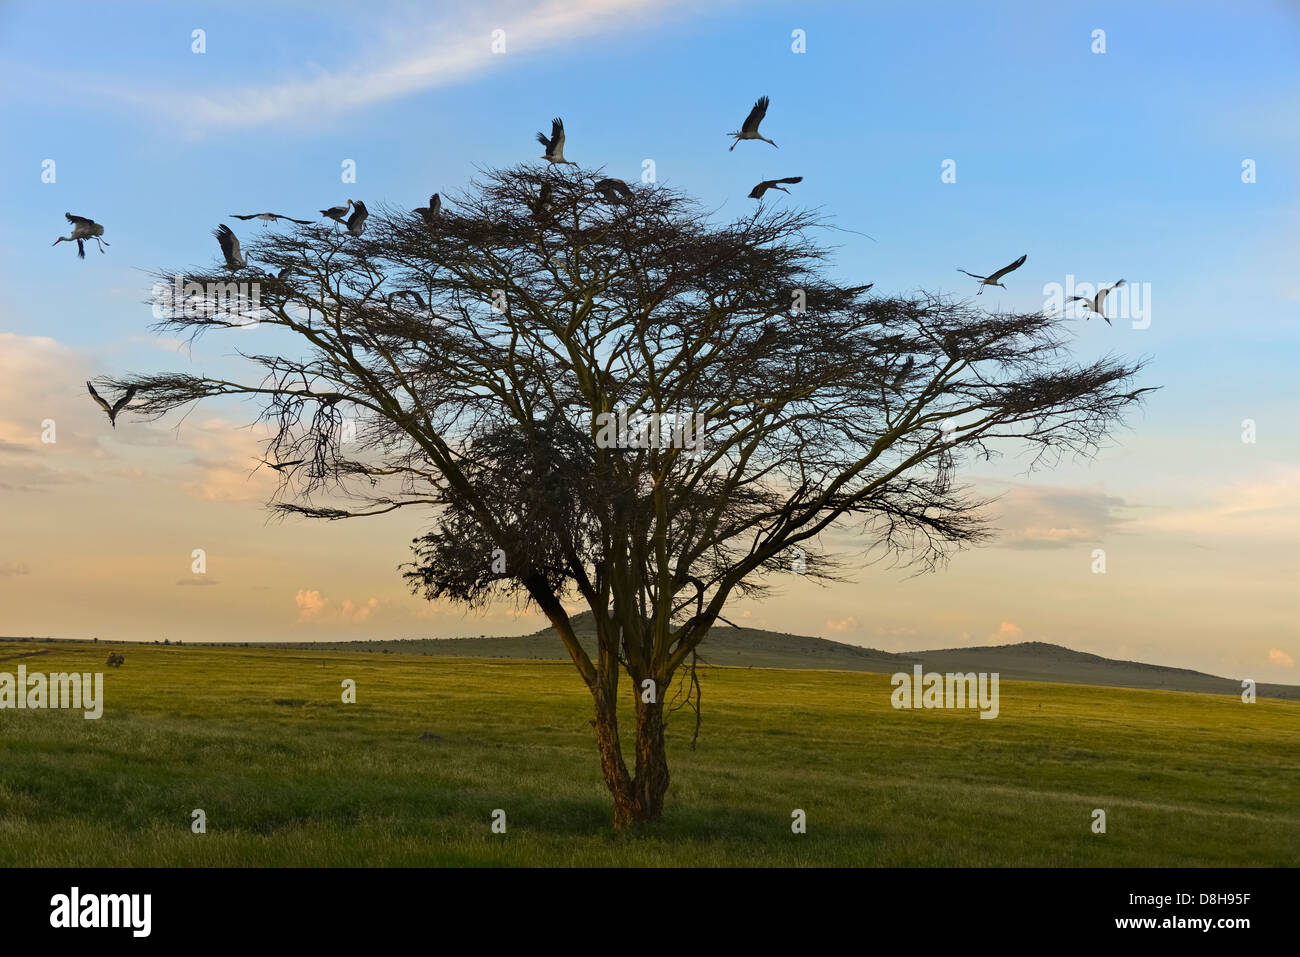 Acacia tree with white European storks .Northern Kenya Stock Photo